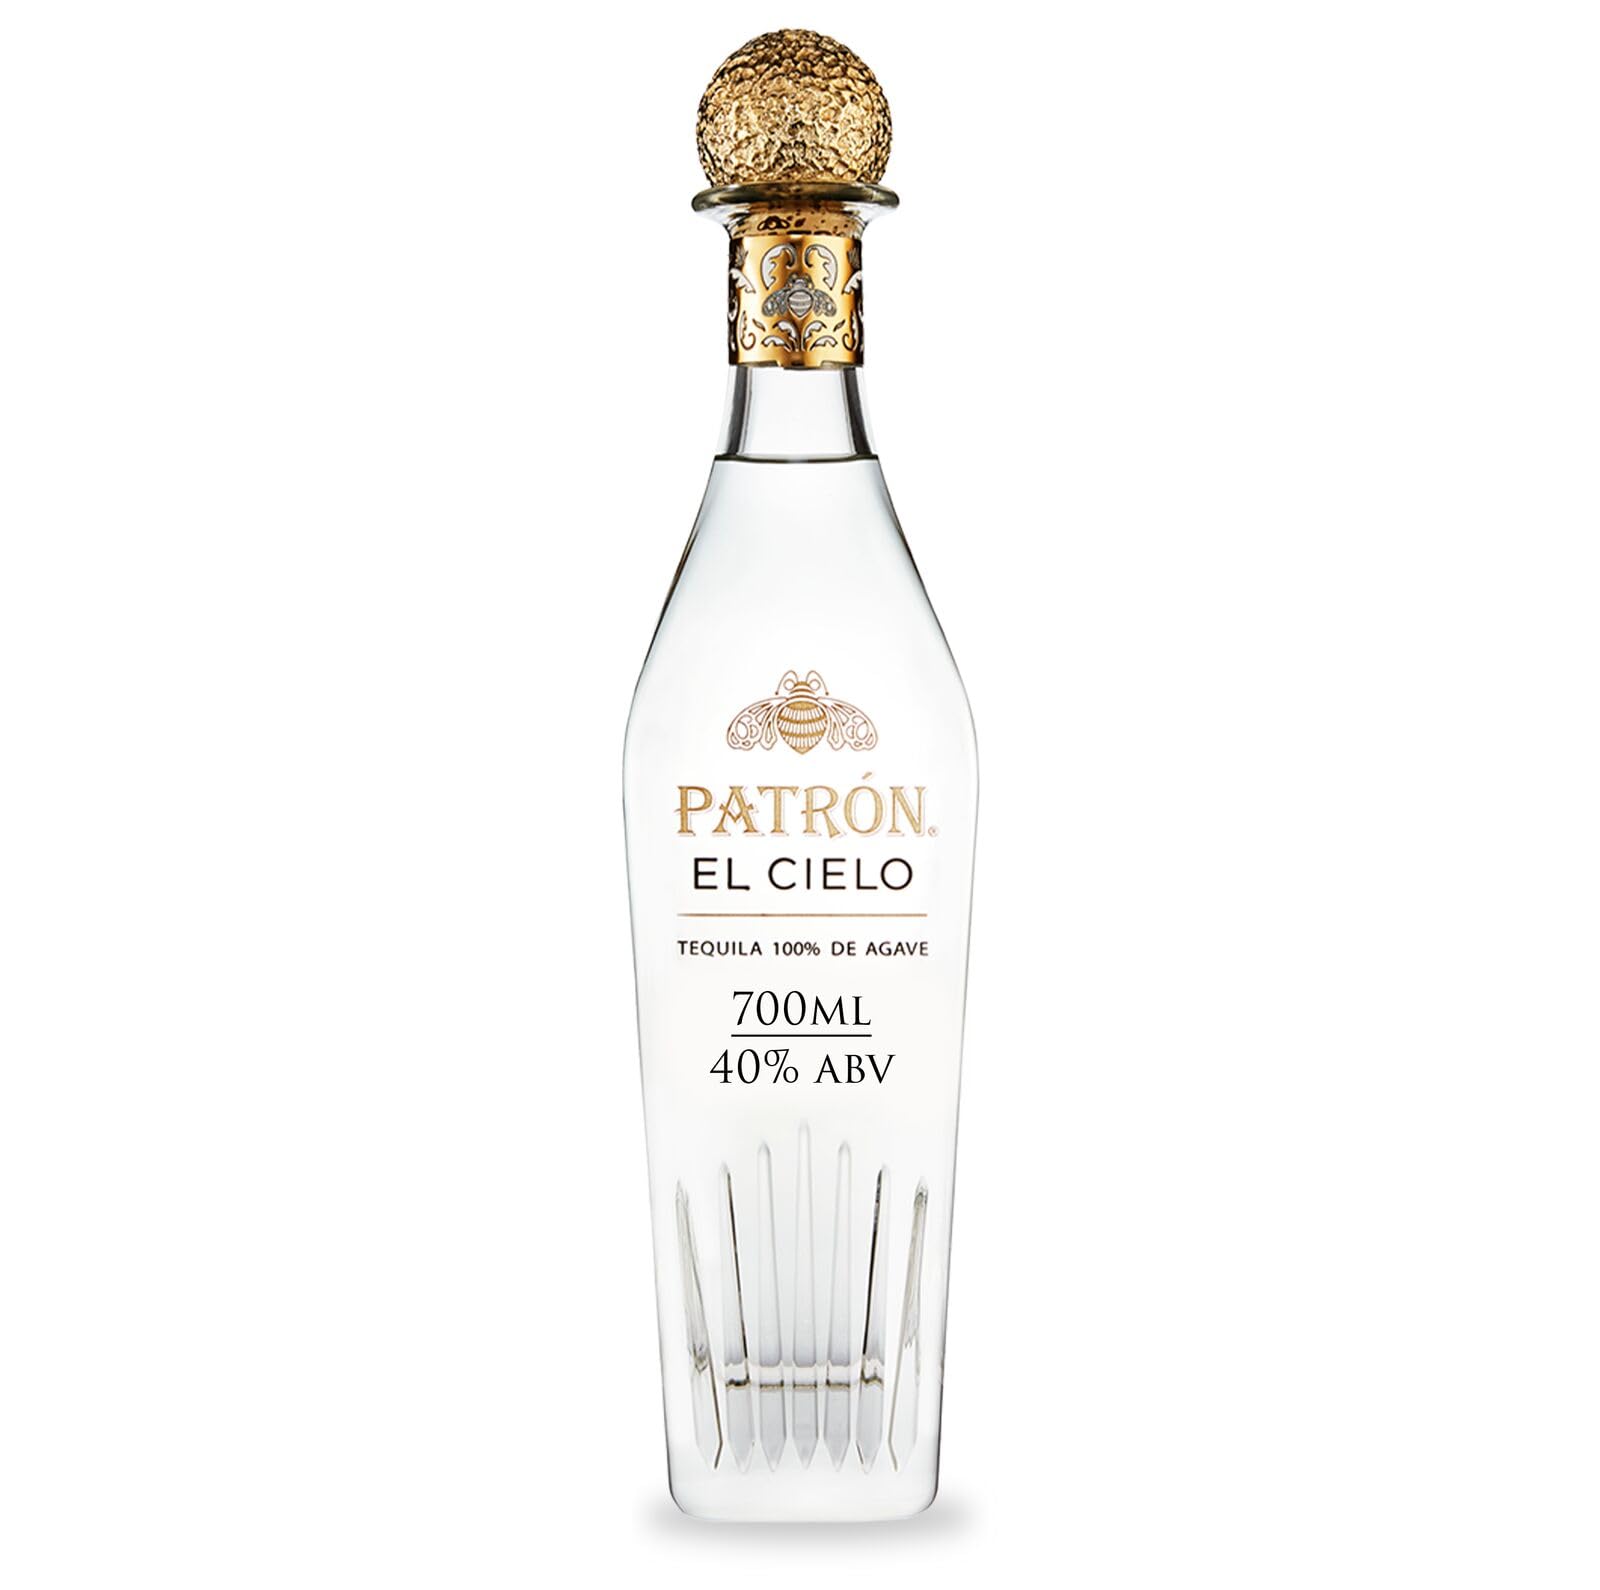 PATRON EL CIELO Premium Silver Tequila, Alkohol aus 100% Weber Blue Agave, wird in kleinen Chargen in Mexiko handgefertigt, 40% Alkoholgehalt, 70cL / 700mL